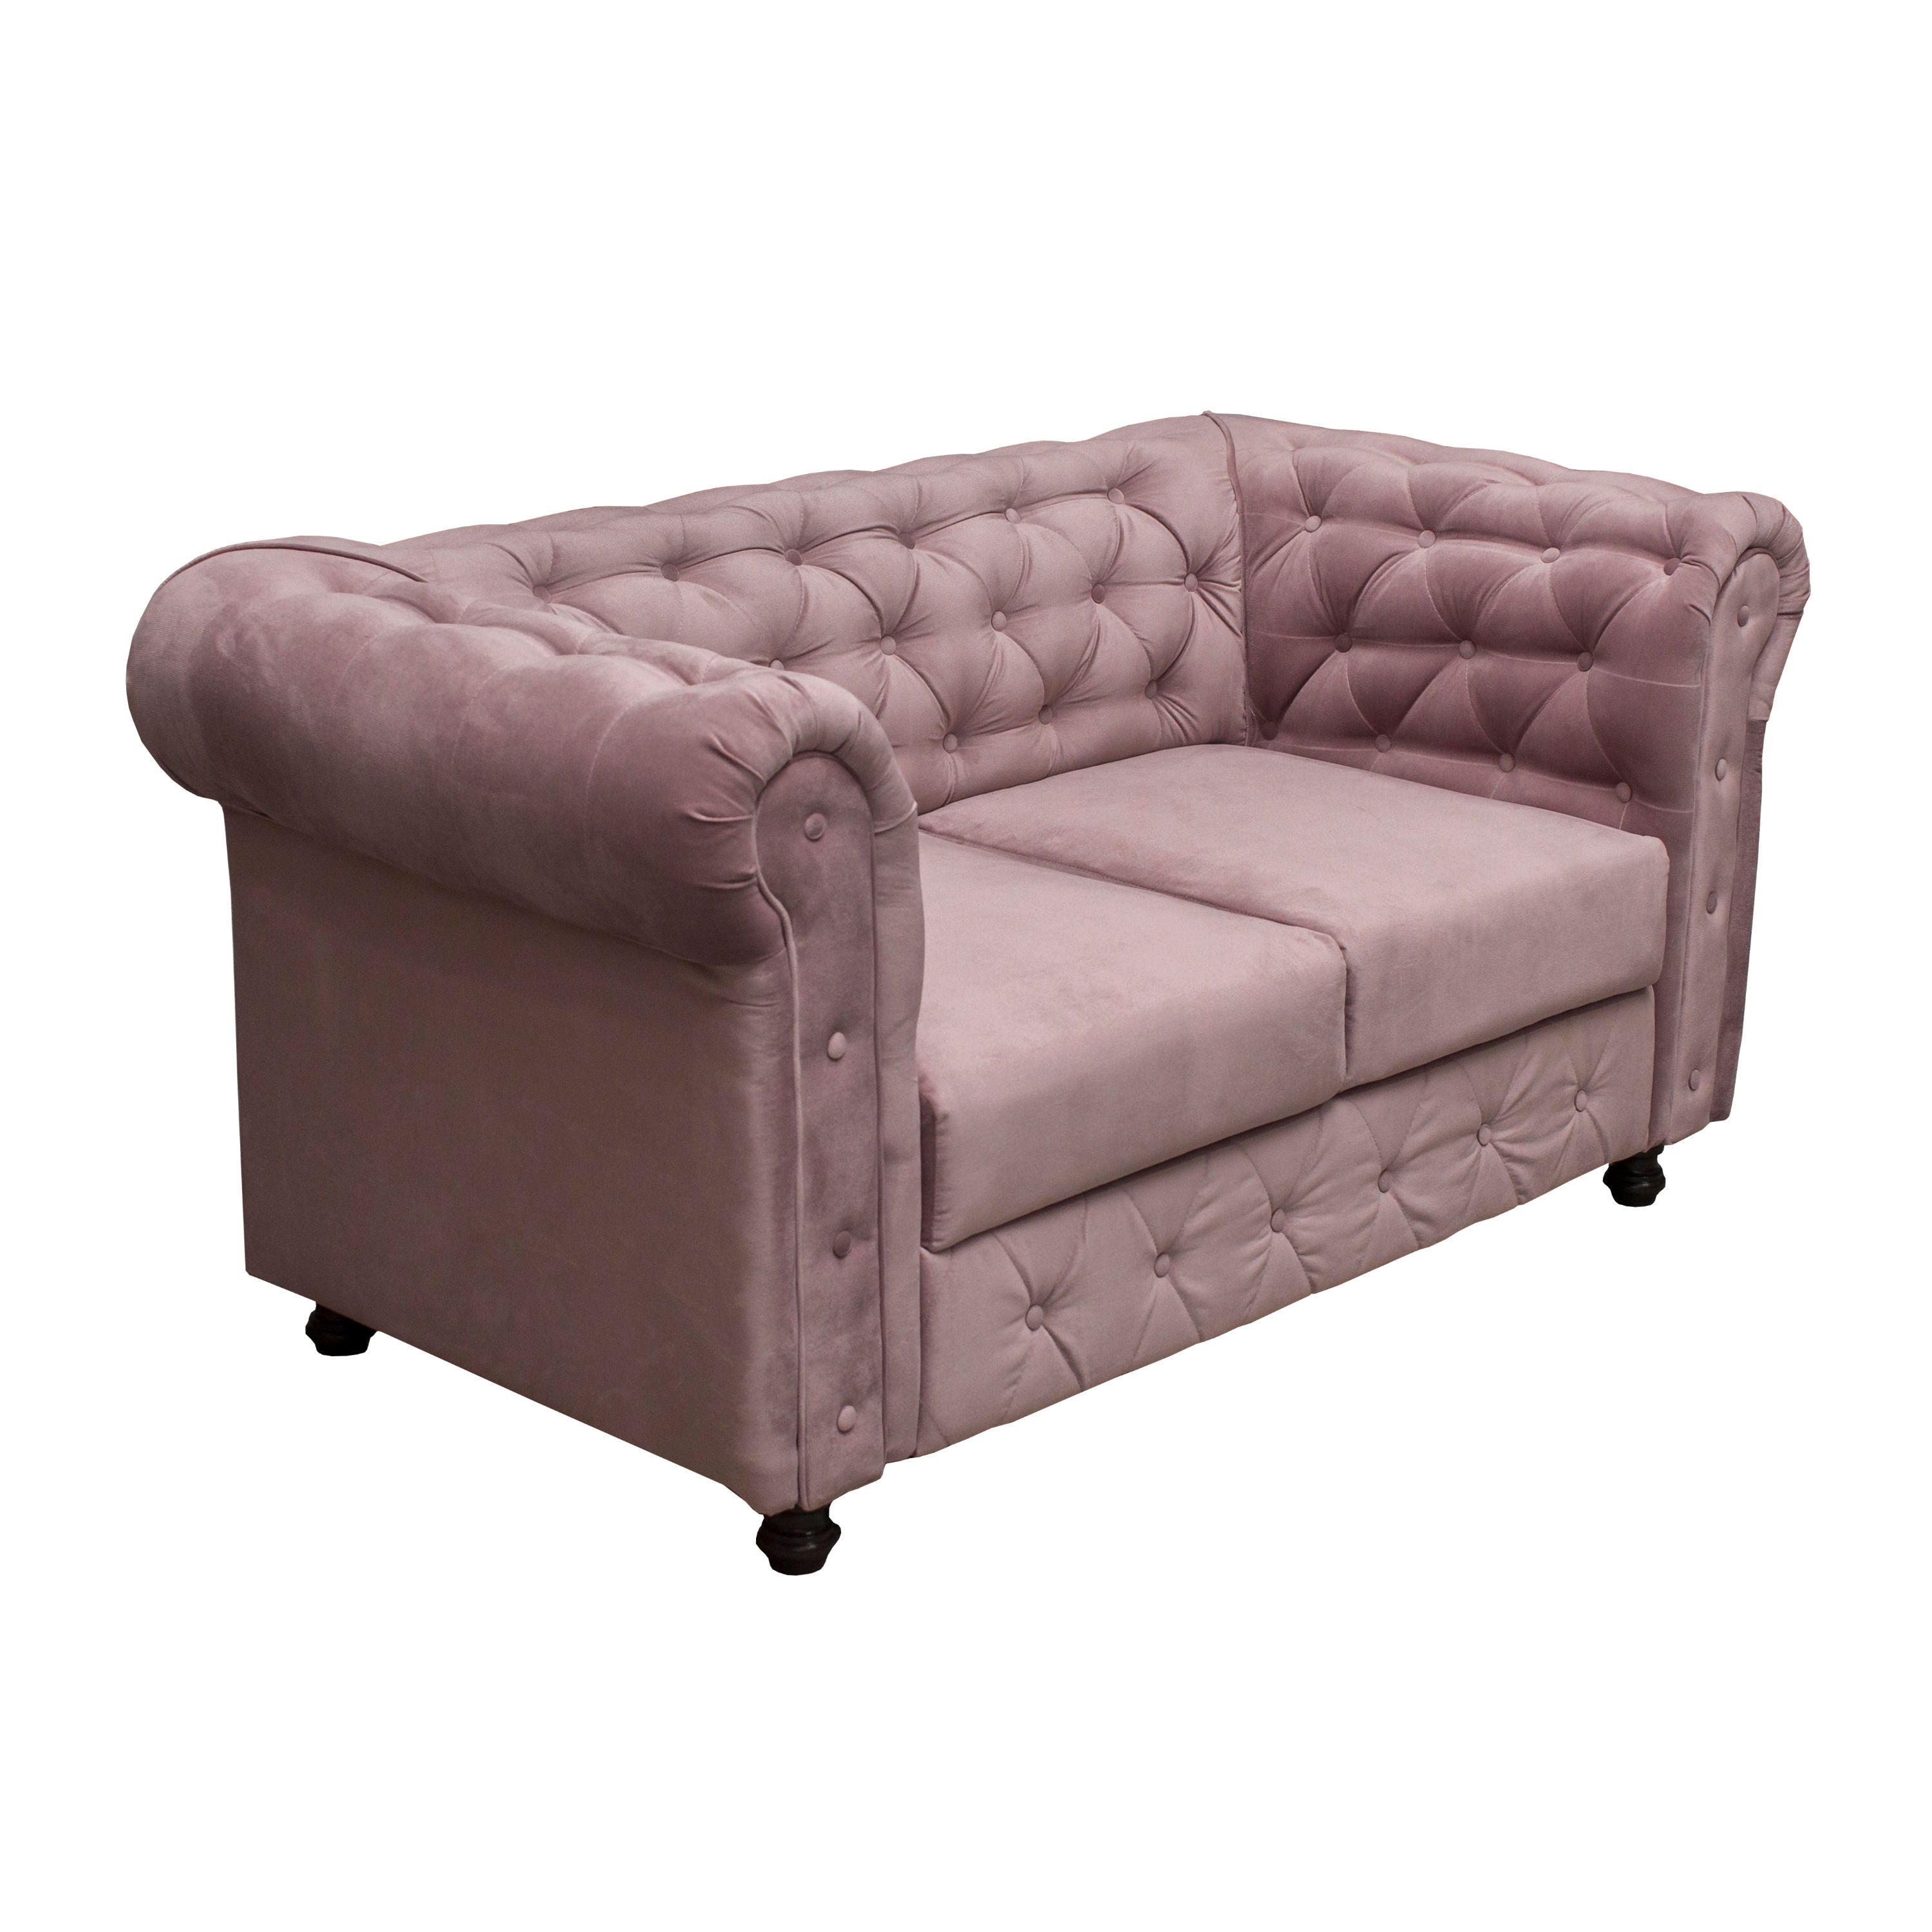 Canapea fixa 2 locuri Chesterfield, roz prafuit, 190 x 90 x 90 cm, 1C